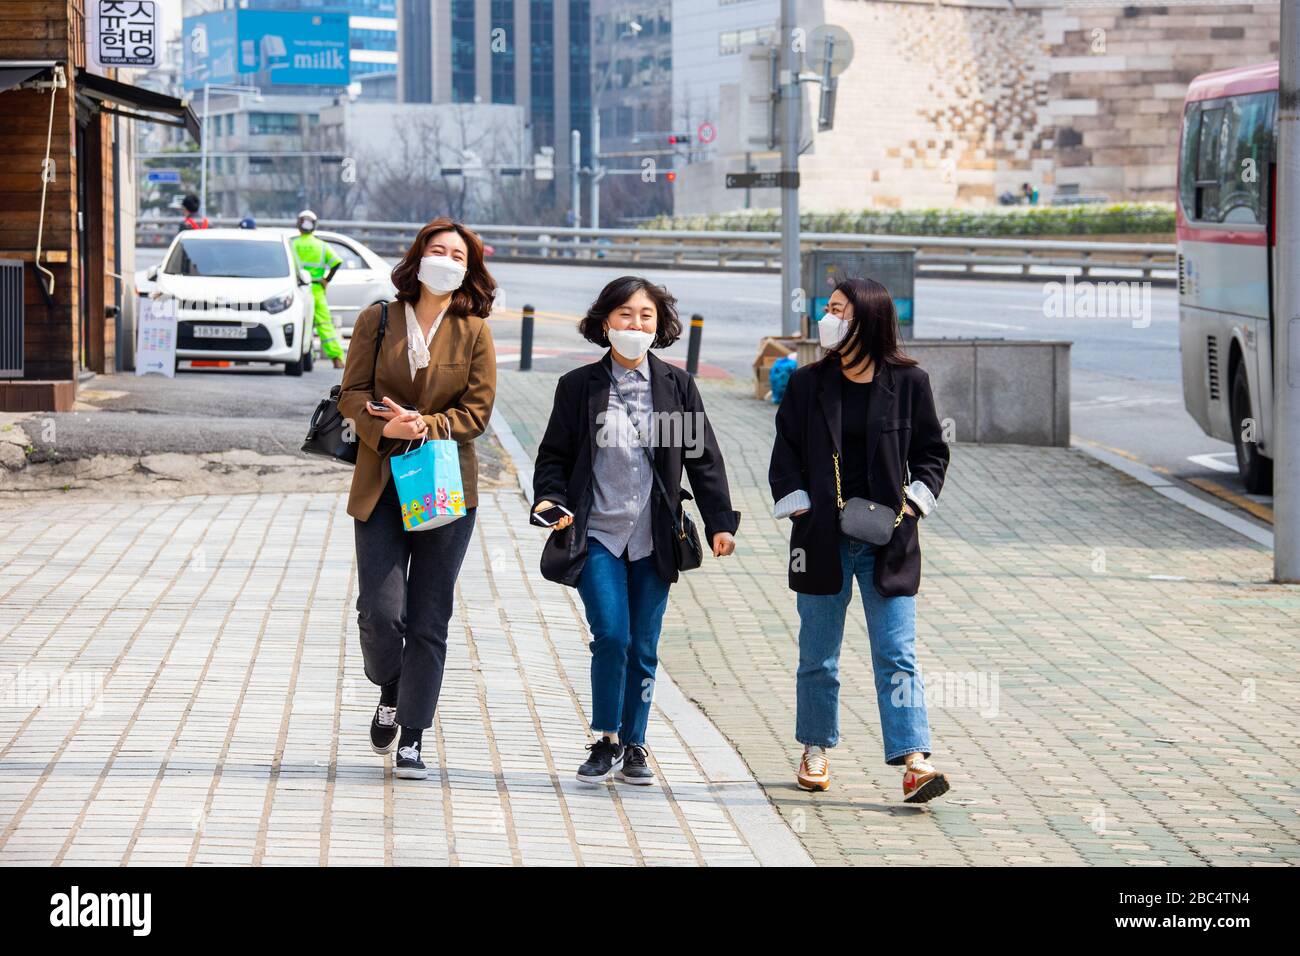 Les femmes portent des masques pendant la pandémie de Coronavirus, Séoul, Corée du Sud Banque D'Images